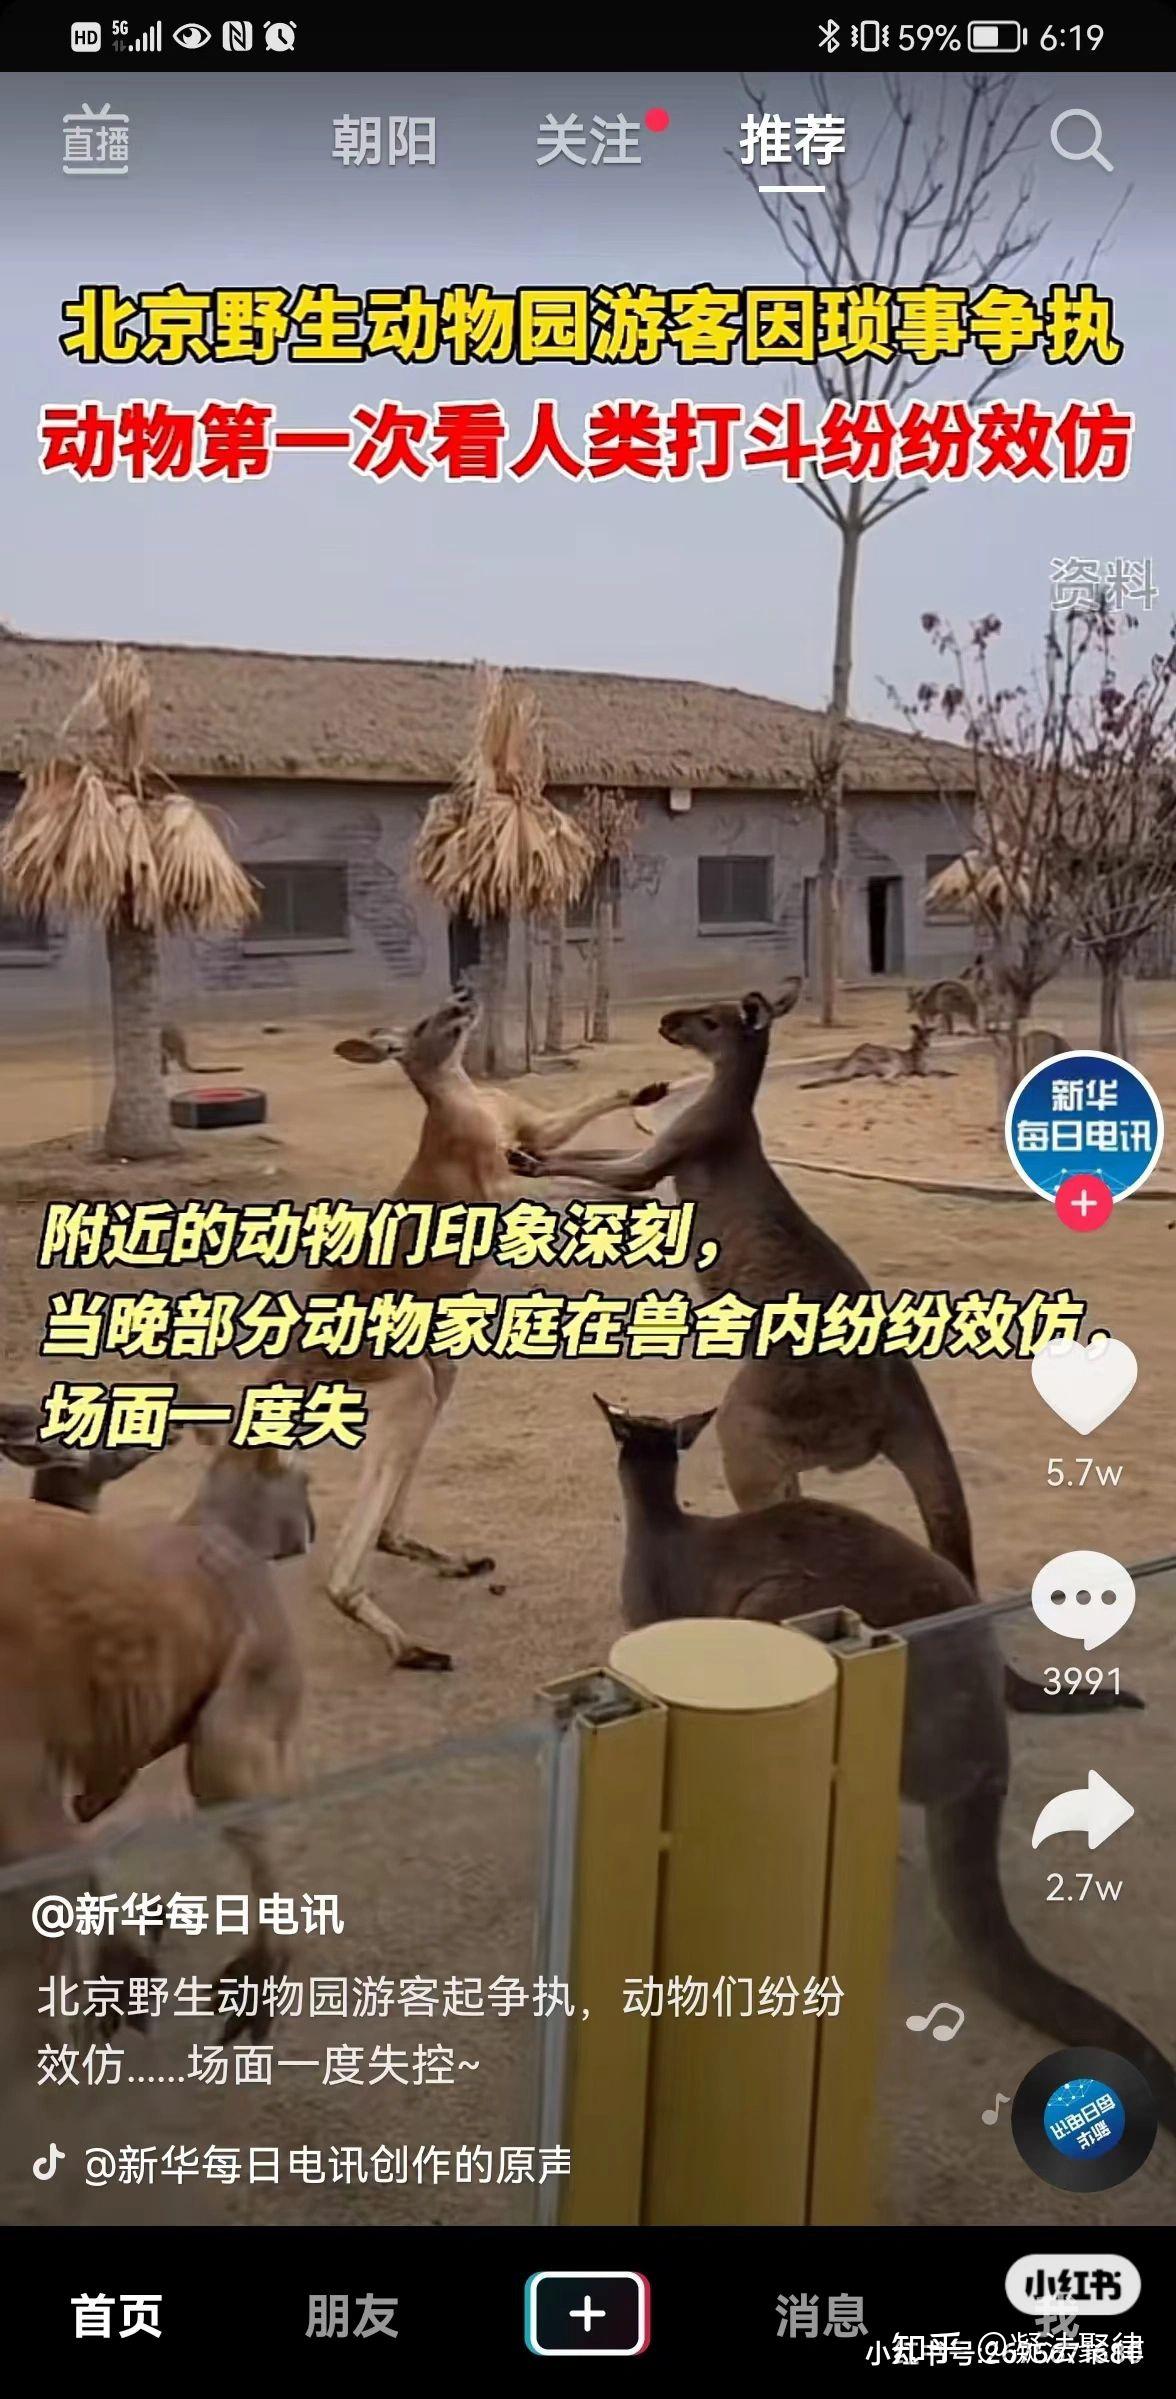 87北京野生动物园人类迷惑行为